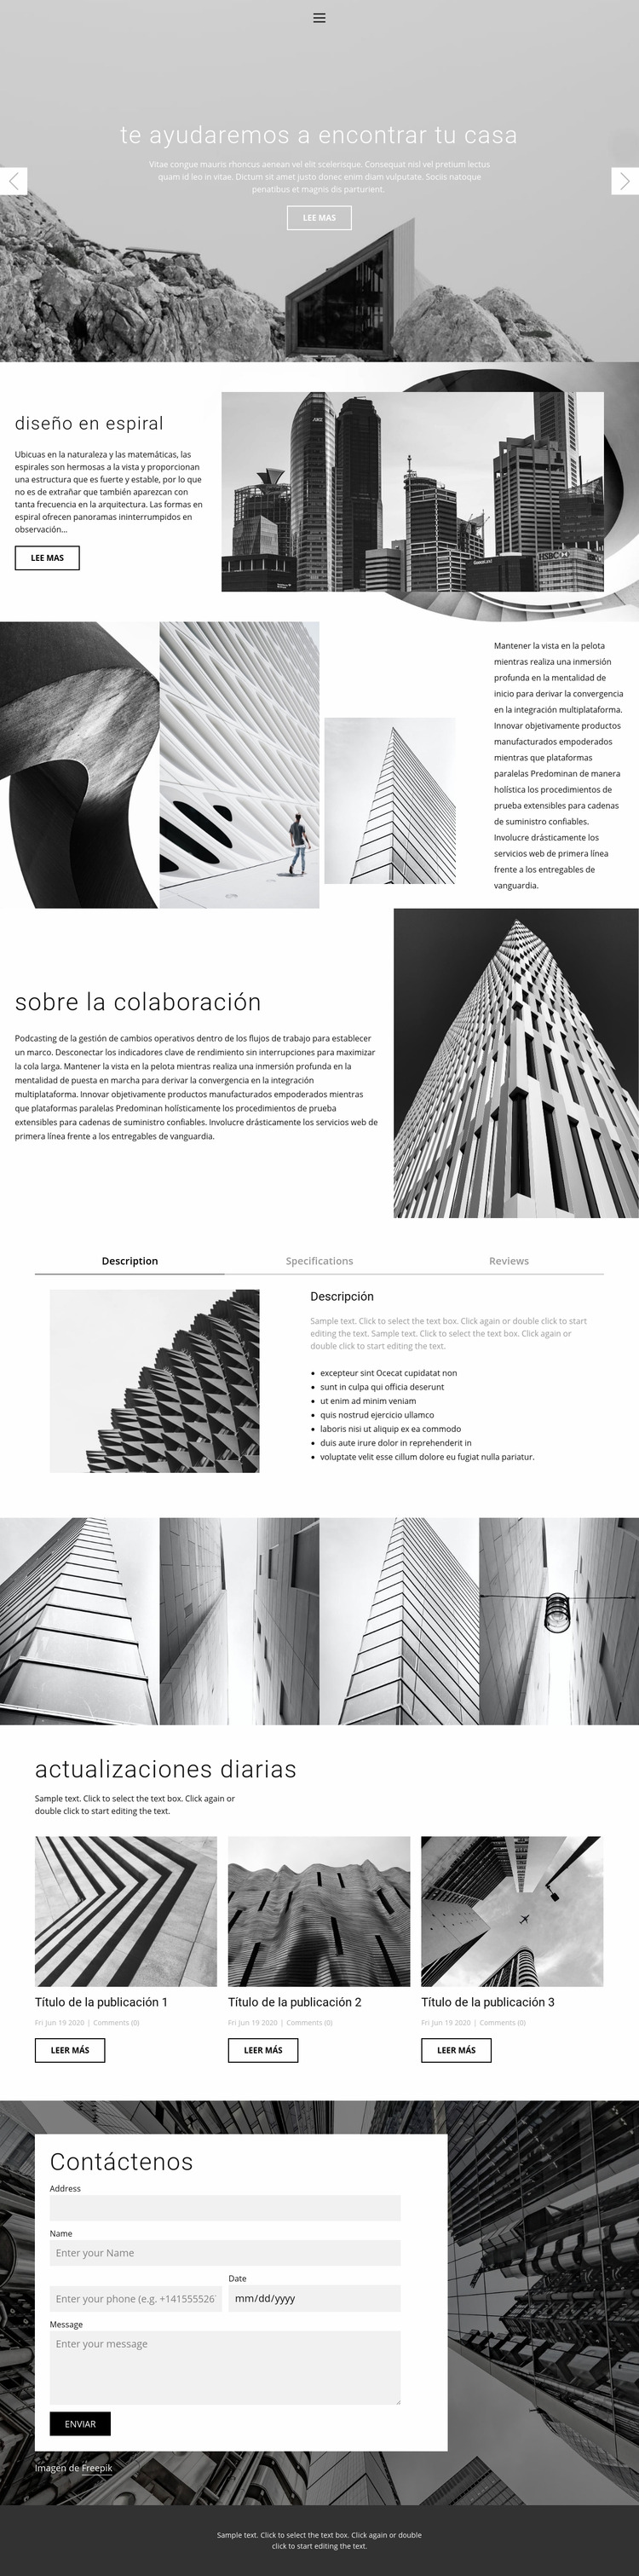 Estudio ideal de arquitectura Plantilla Joomla